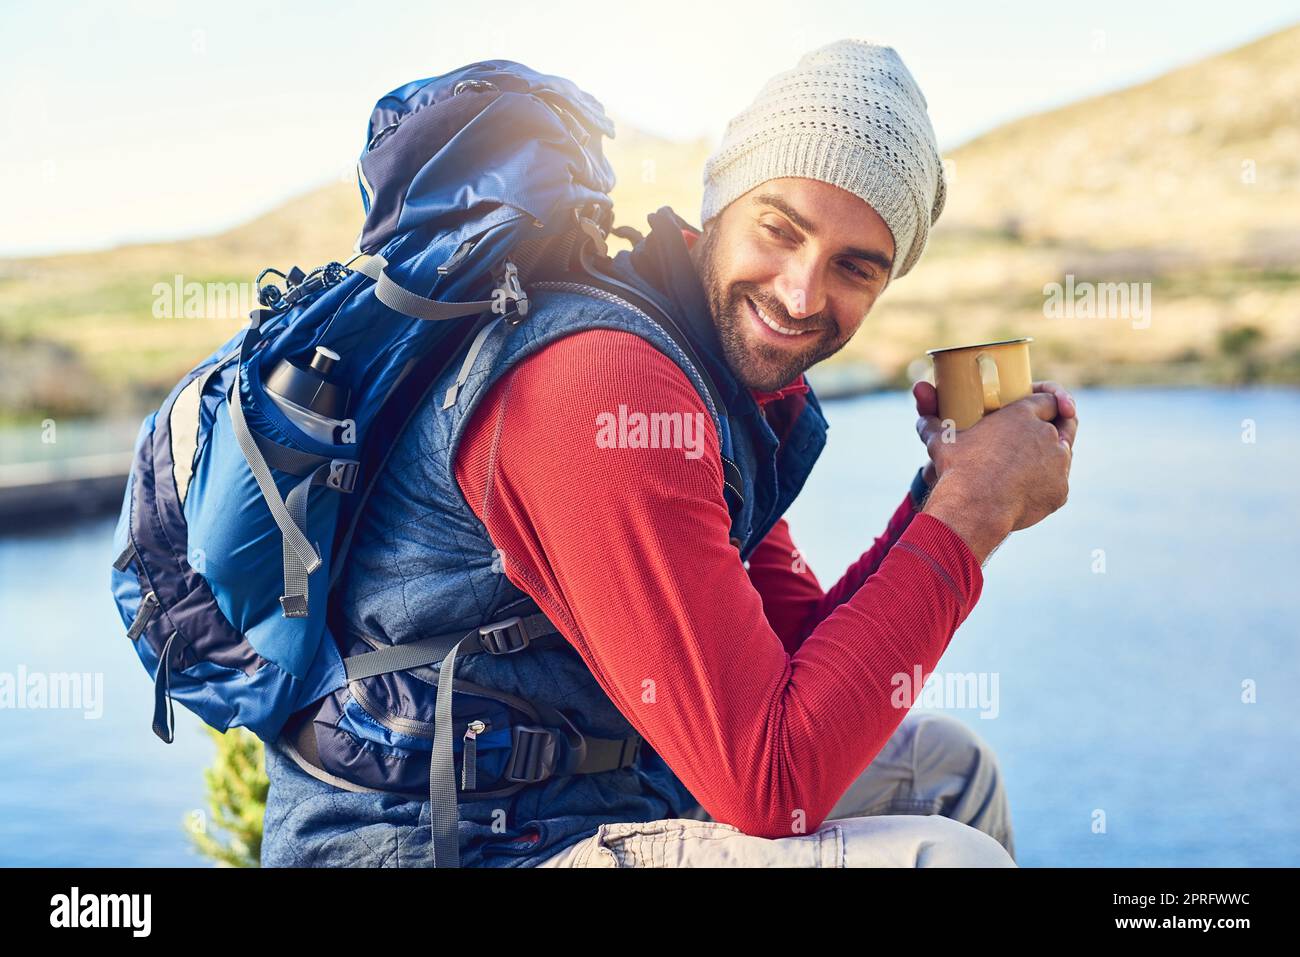 Sein Koffein-Fix in der freien Natur. Ein glücklicher Wanderer trinkt Kaffee, während er einen Blick auf den See auf einem Wanderweg bewundert. Stockfoto